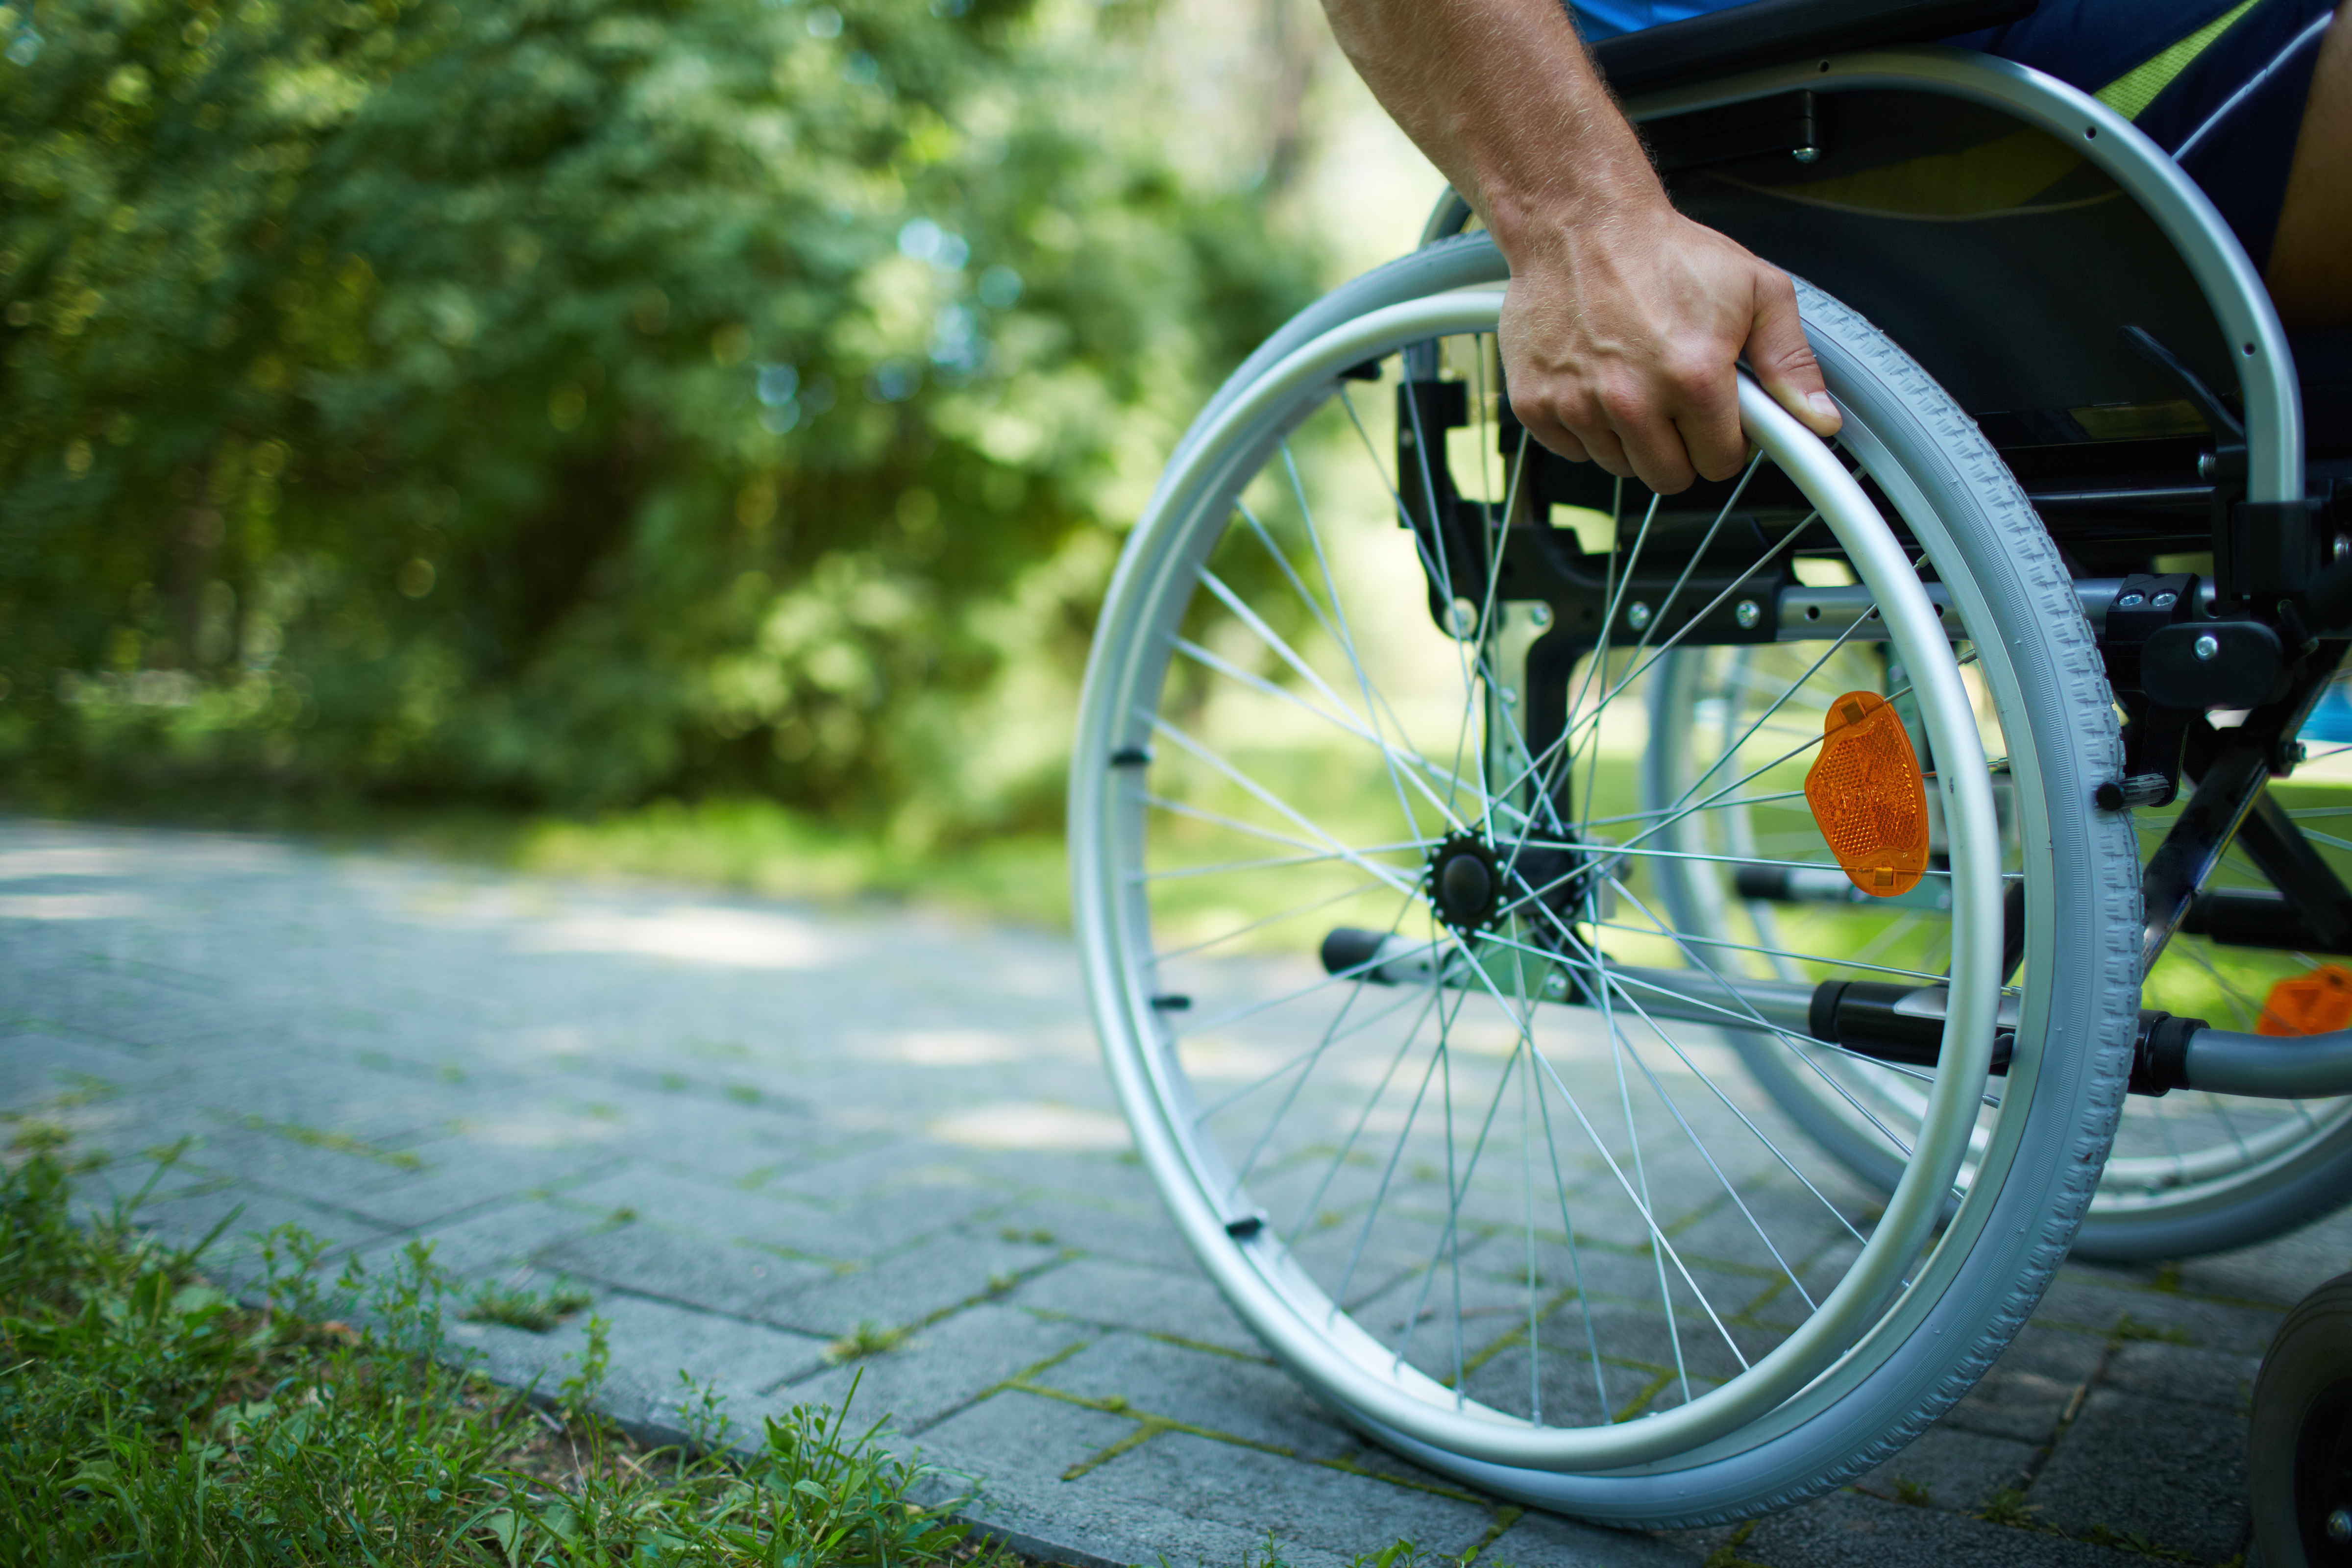     « La Martinique n'est pas un frein aux personnes handicapées »

